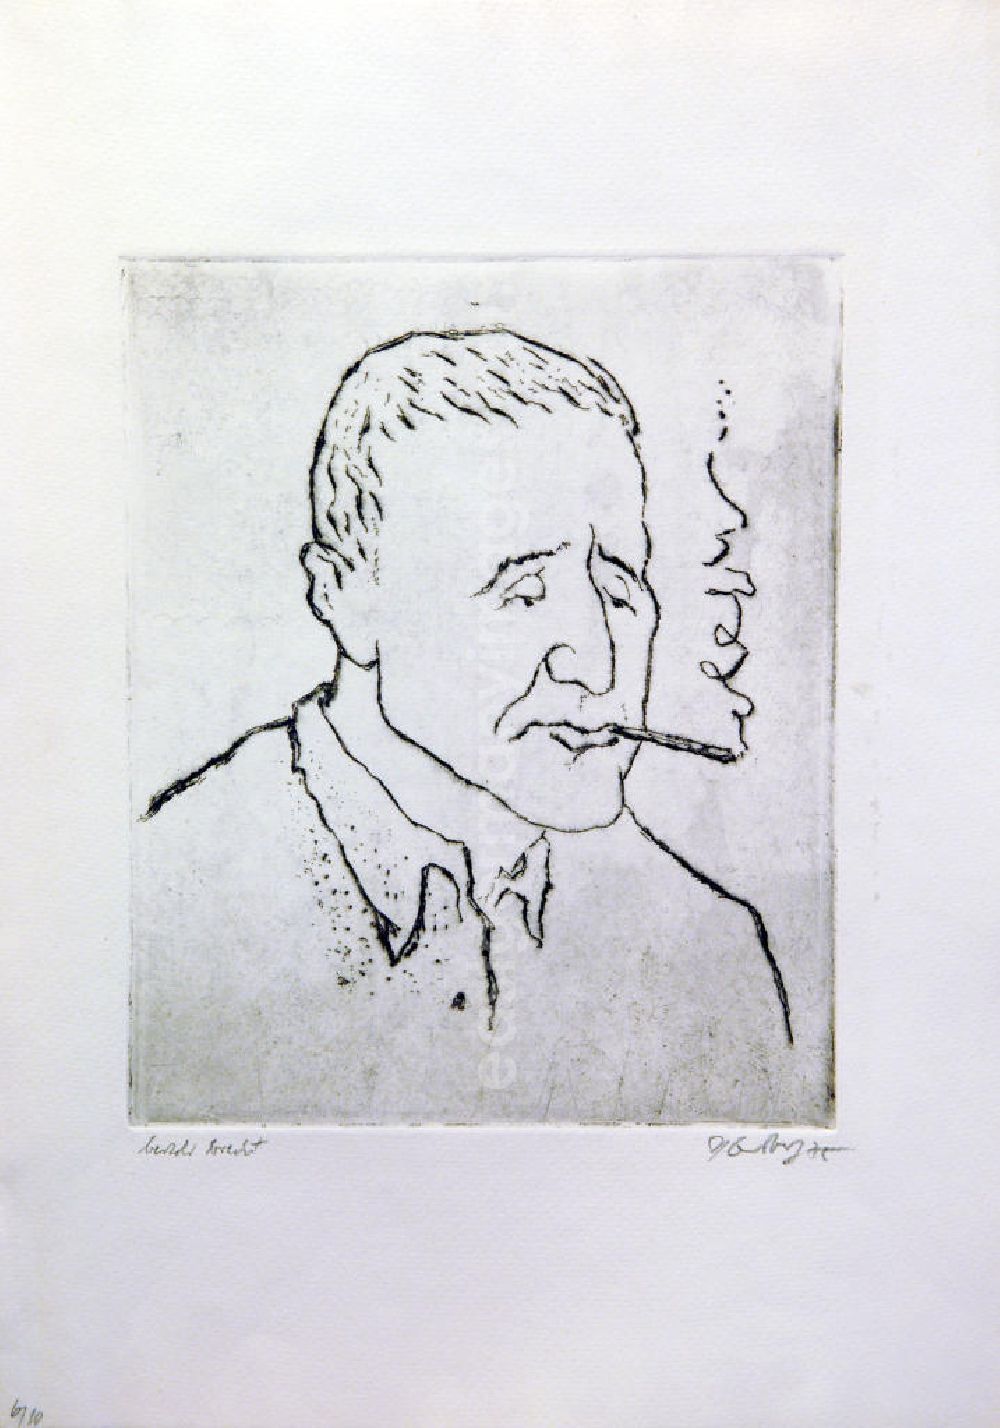 Berlin: Grafik von Herbert Sandberg über Bertolt Brecht (*10.02.1898 †14.08.1956) aus dem Jahr 1975 (Porträt rechts beim Rauchen) 29,9x24,2cm Radierung, handsigniert, 6/1